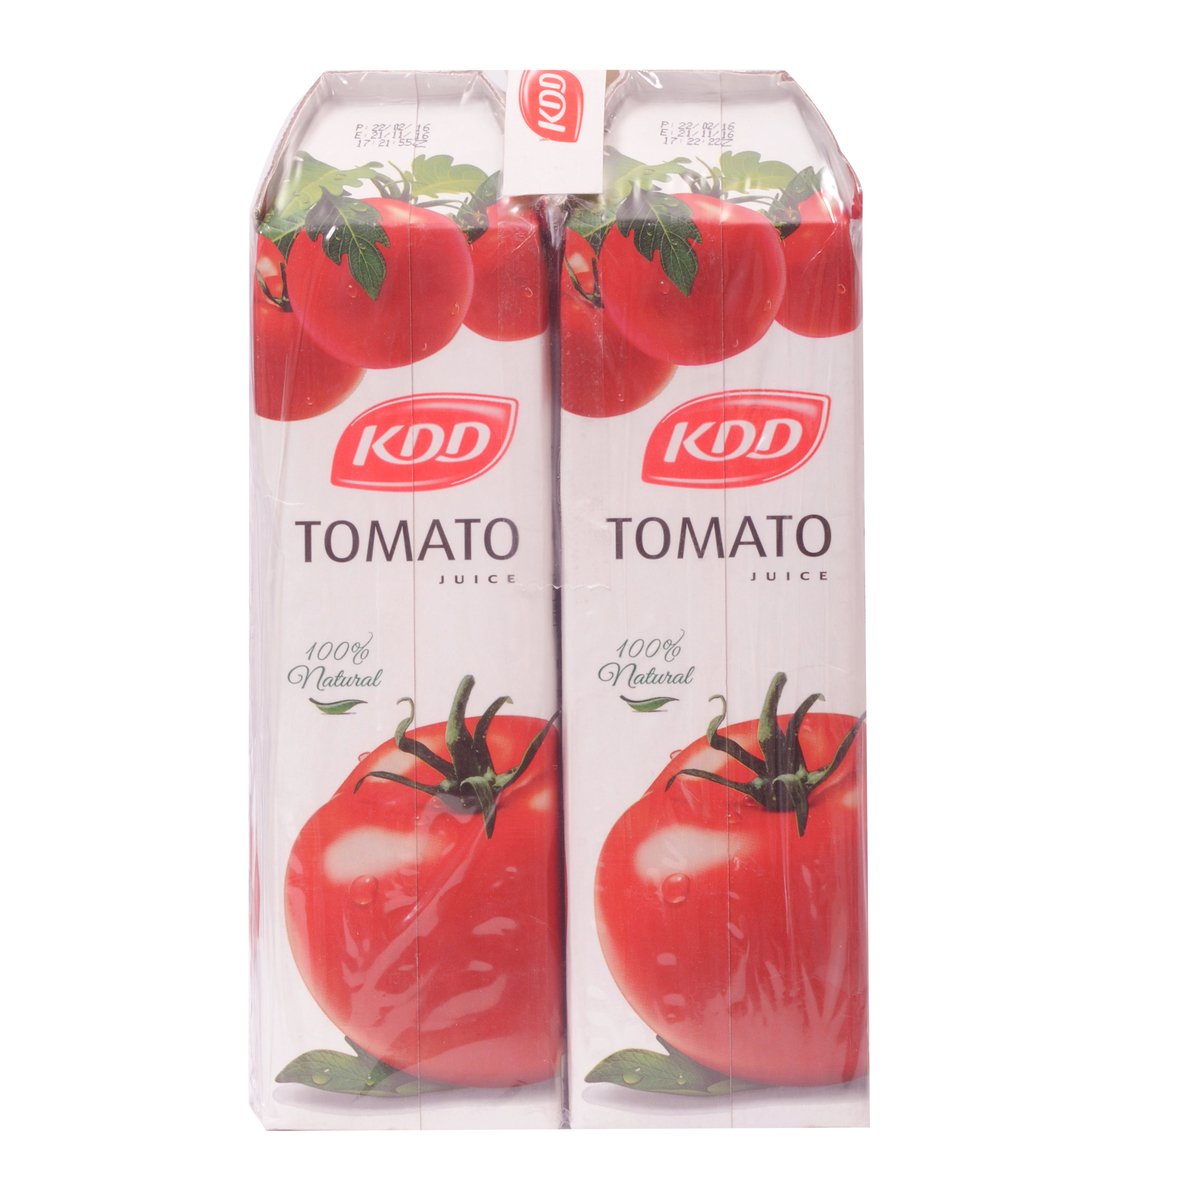 KDD Tomato Juice 1Litre